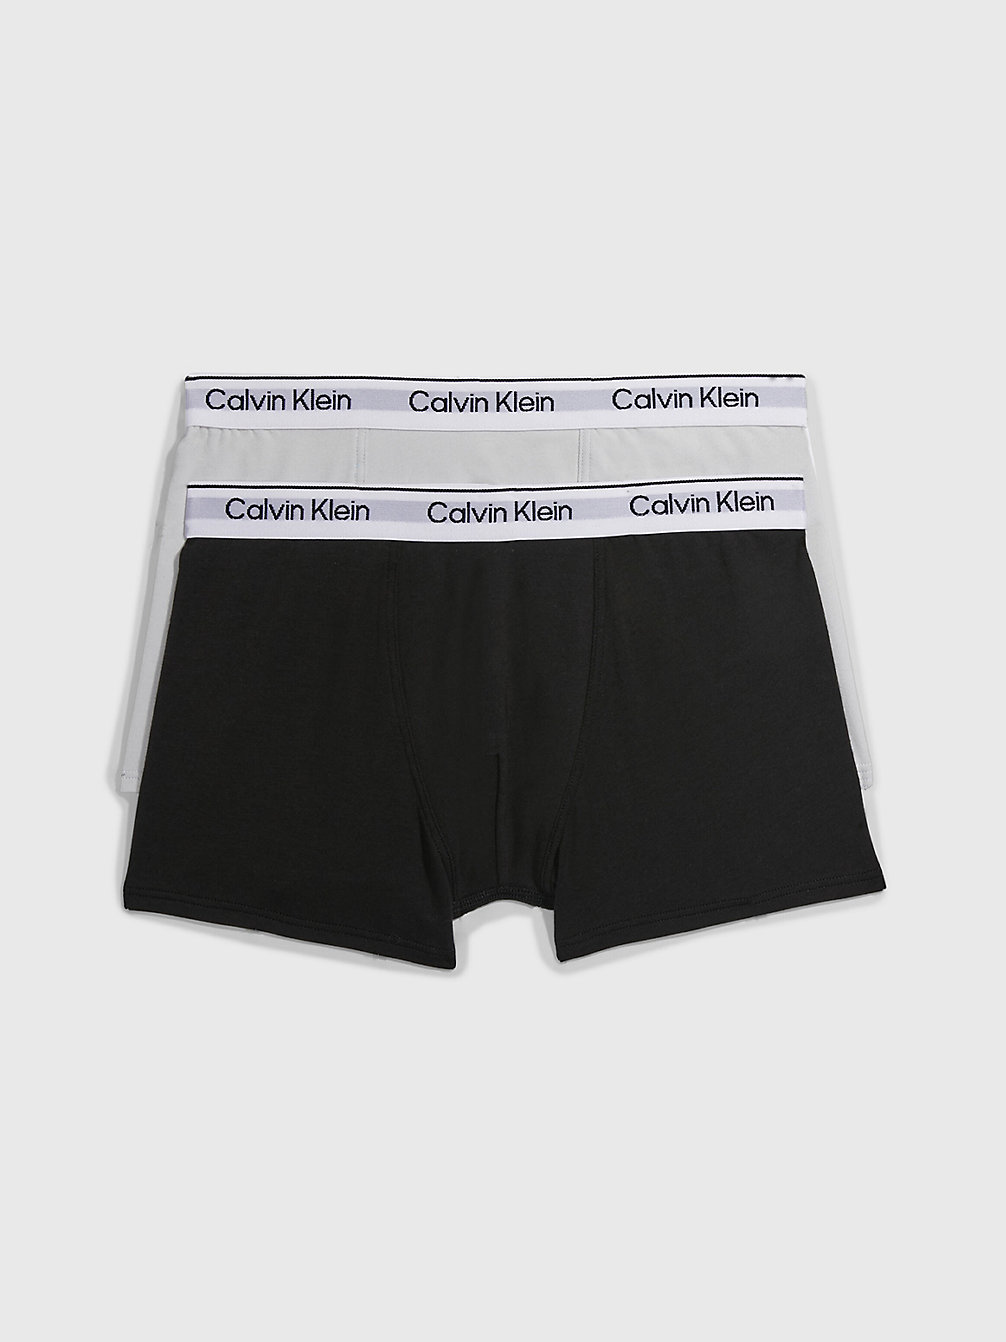 Boxer Aderenti Bambino In Confezione Da 2 - Modern Cotton > STONEGREY/PVHBLACK > undefined boys > Calvin Klein